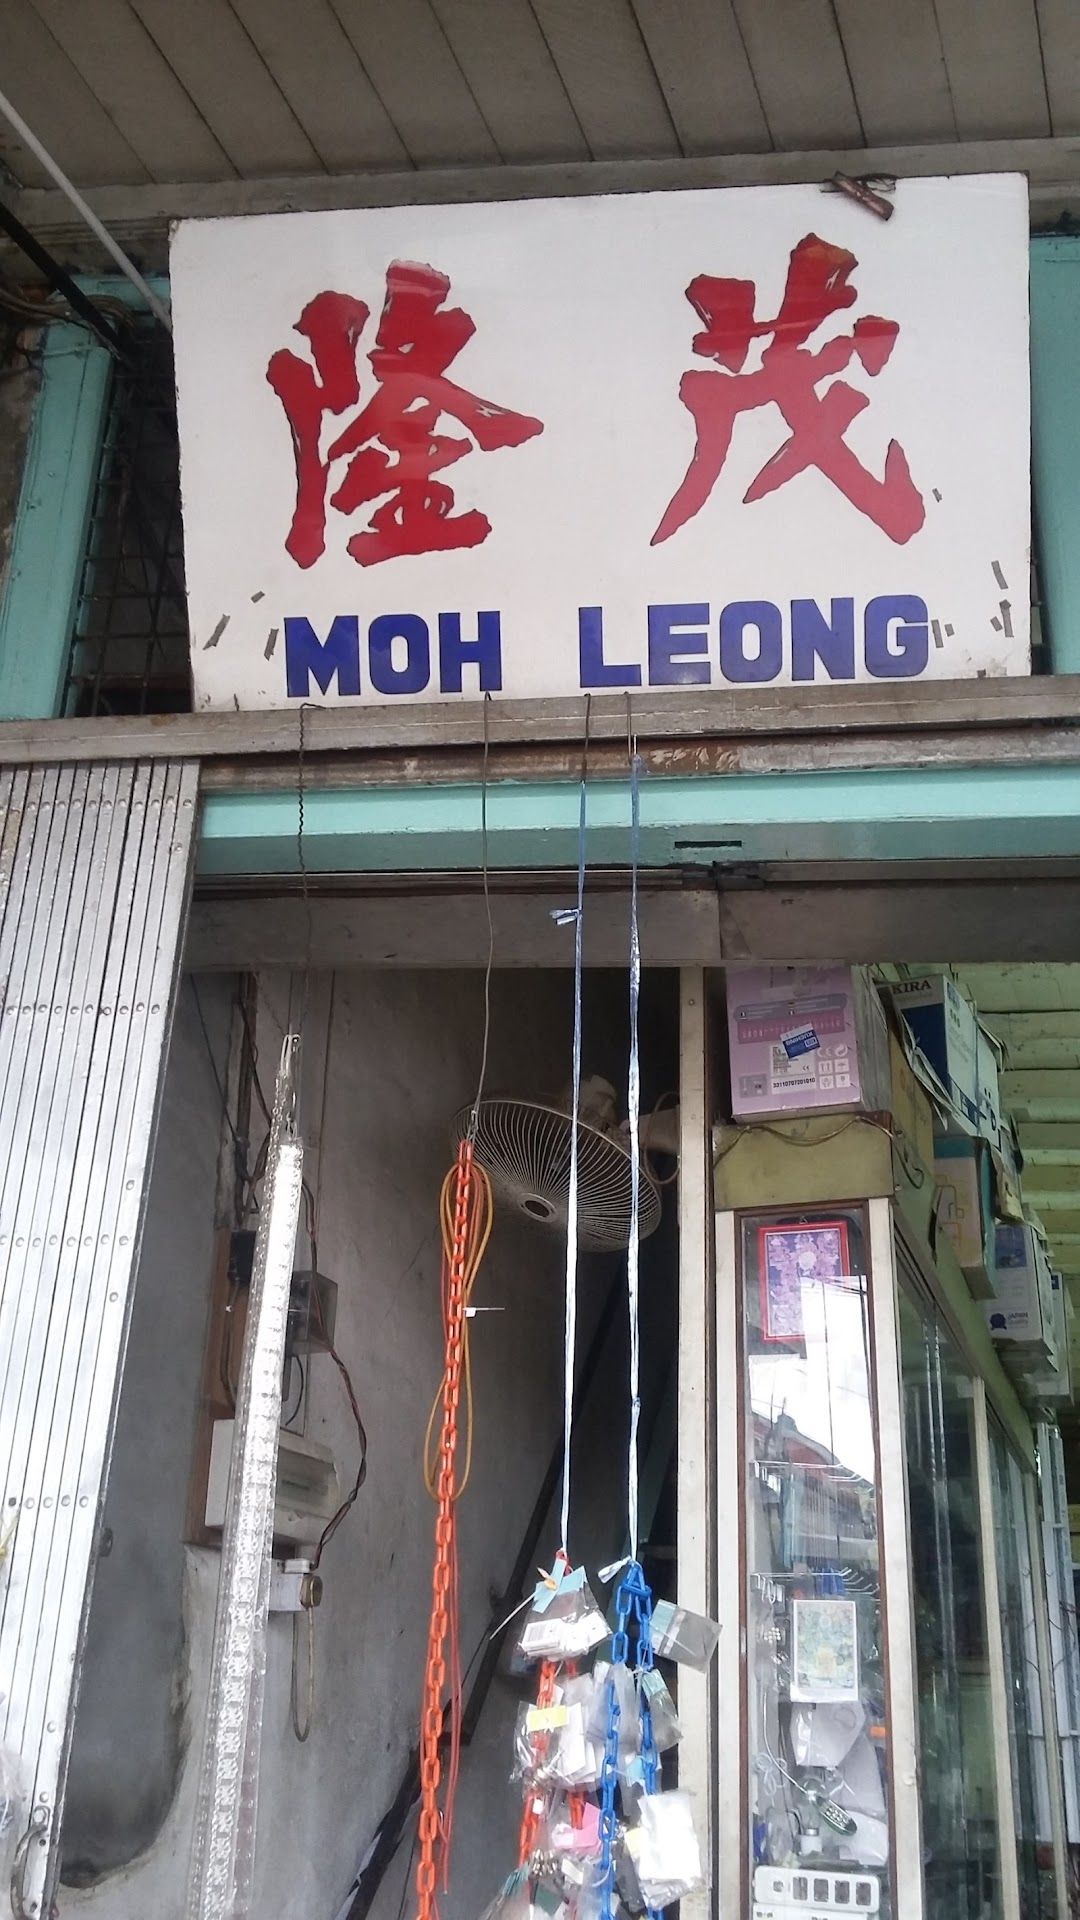 Moh Leong